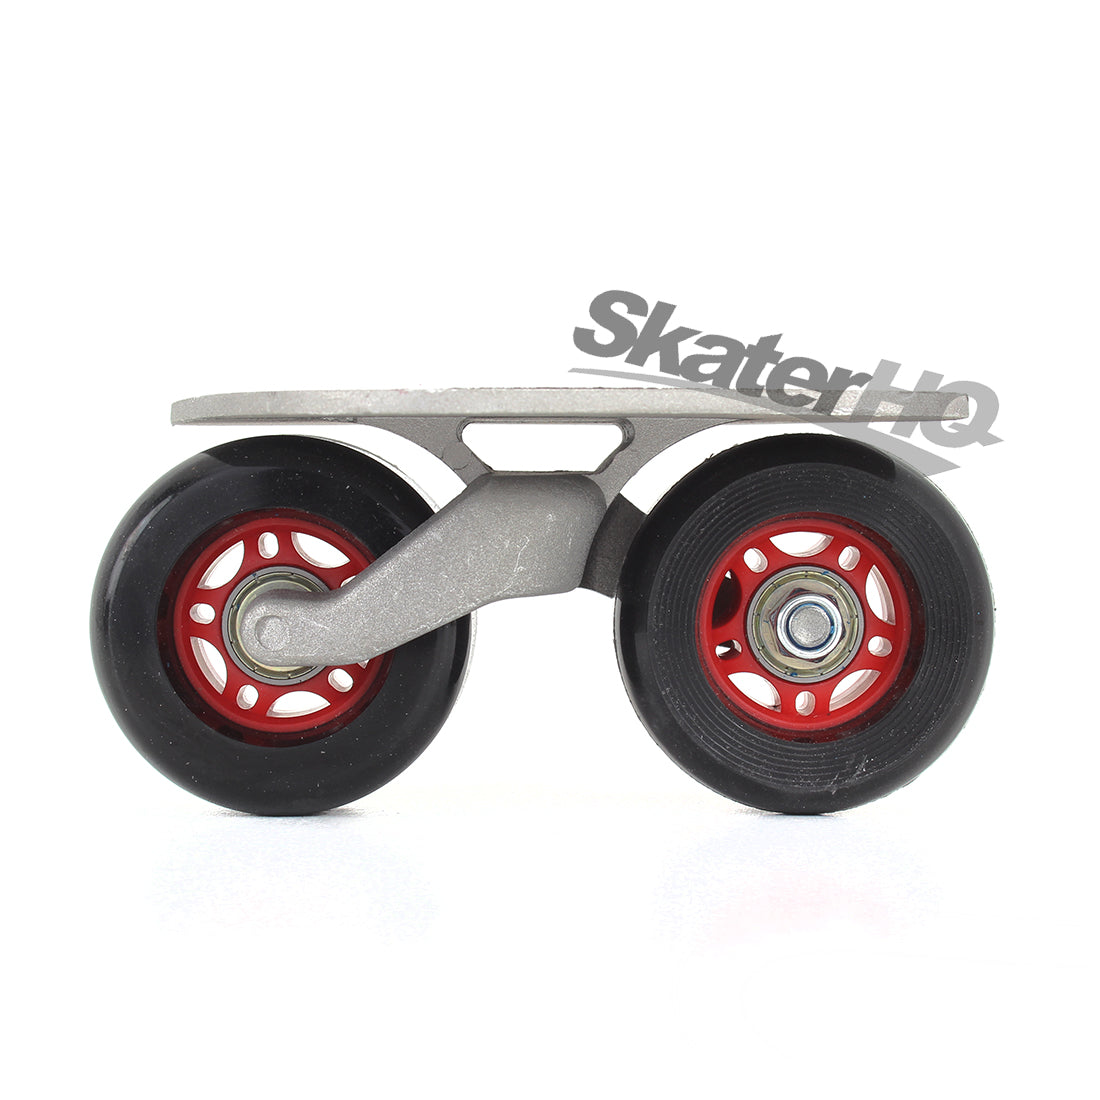 Freeline Drifter Skates - Silver/Black Other Fun Toys